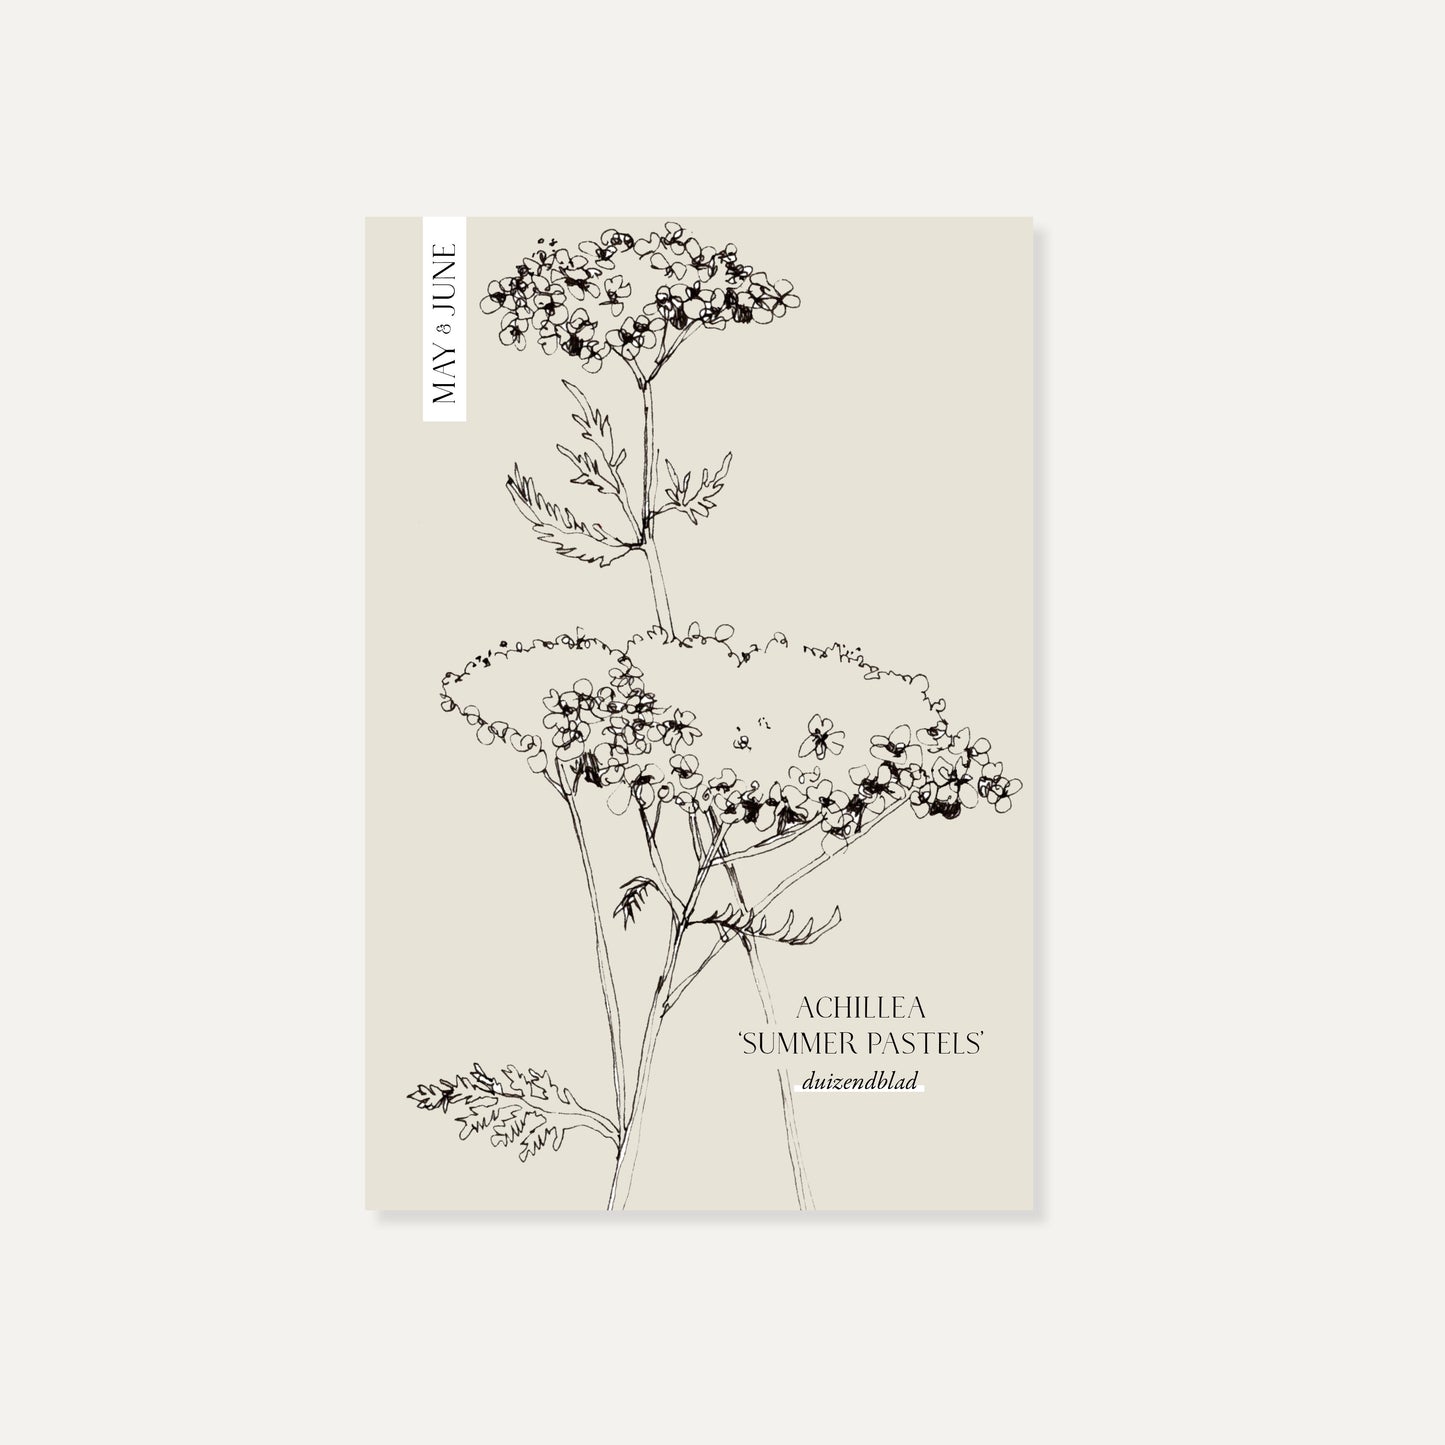 Achillea millefolium ‘Summer Pastels’ (duizendblad)